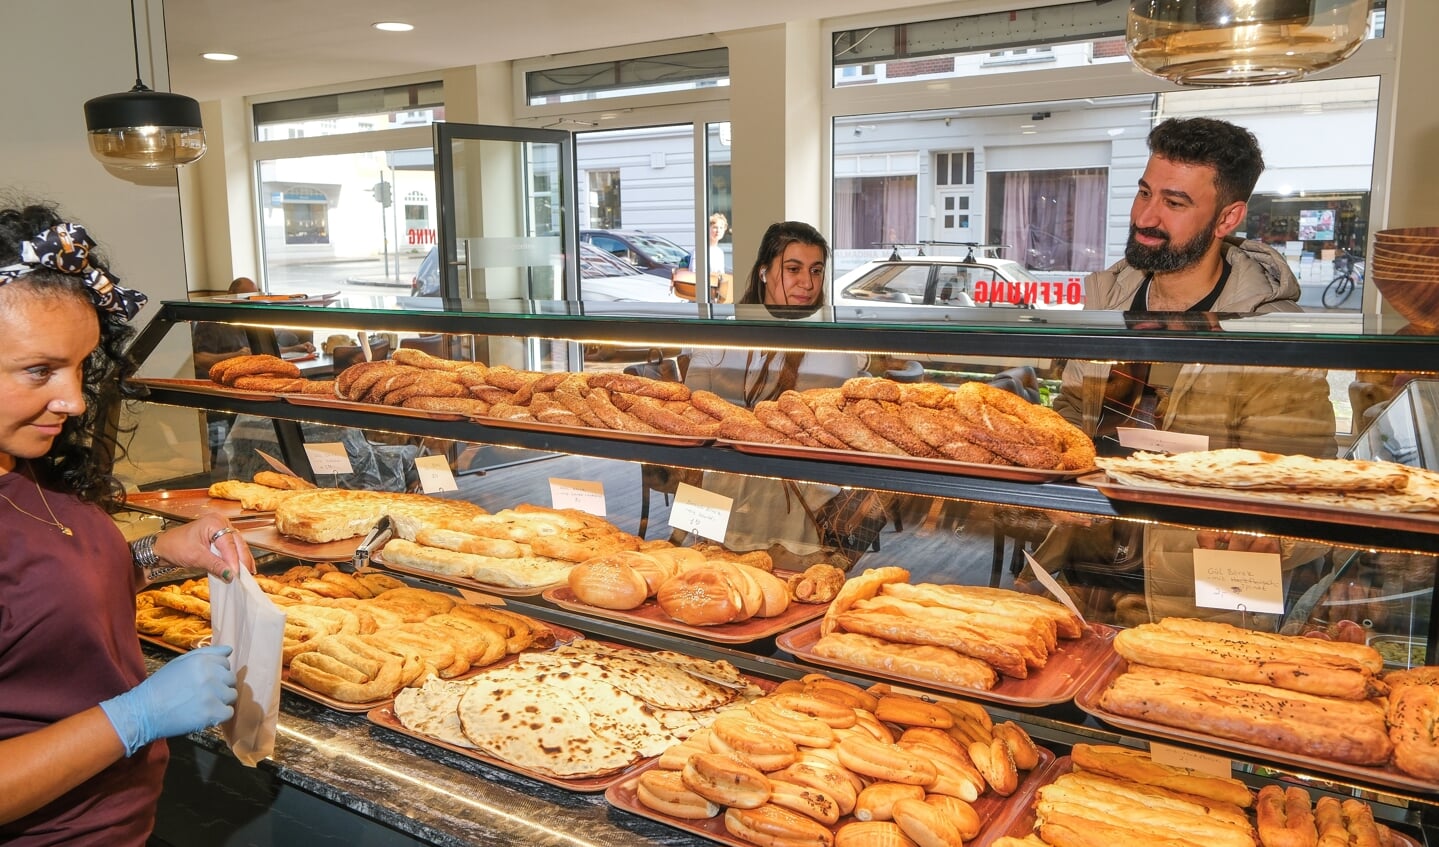 Der er kommet mange nysgerrige kunder siden åbningen sidste uge. Medarbejder Emi Göyünc (t.v.) understreger, at Nystaden virkelig havde brug for en udelukkende tyrkisk bager. Foto: